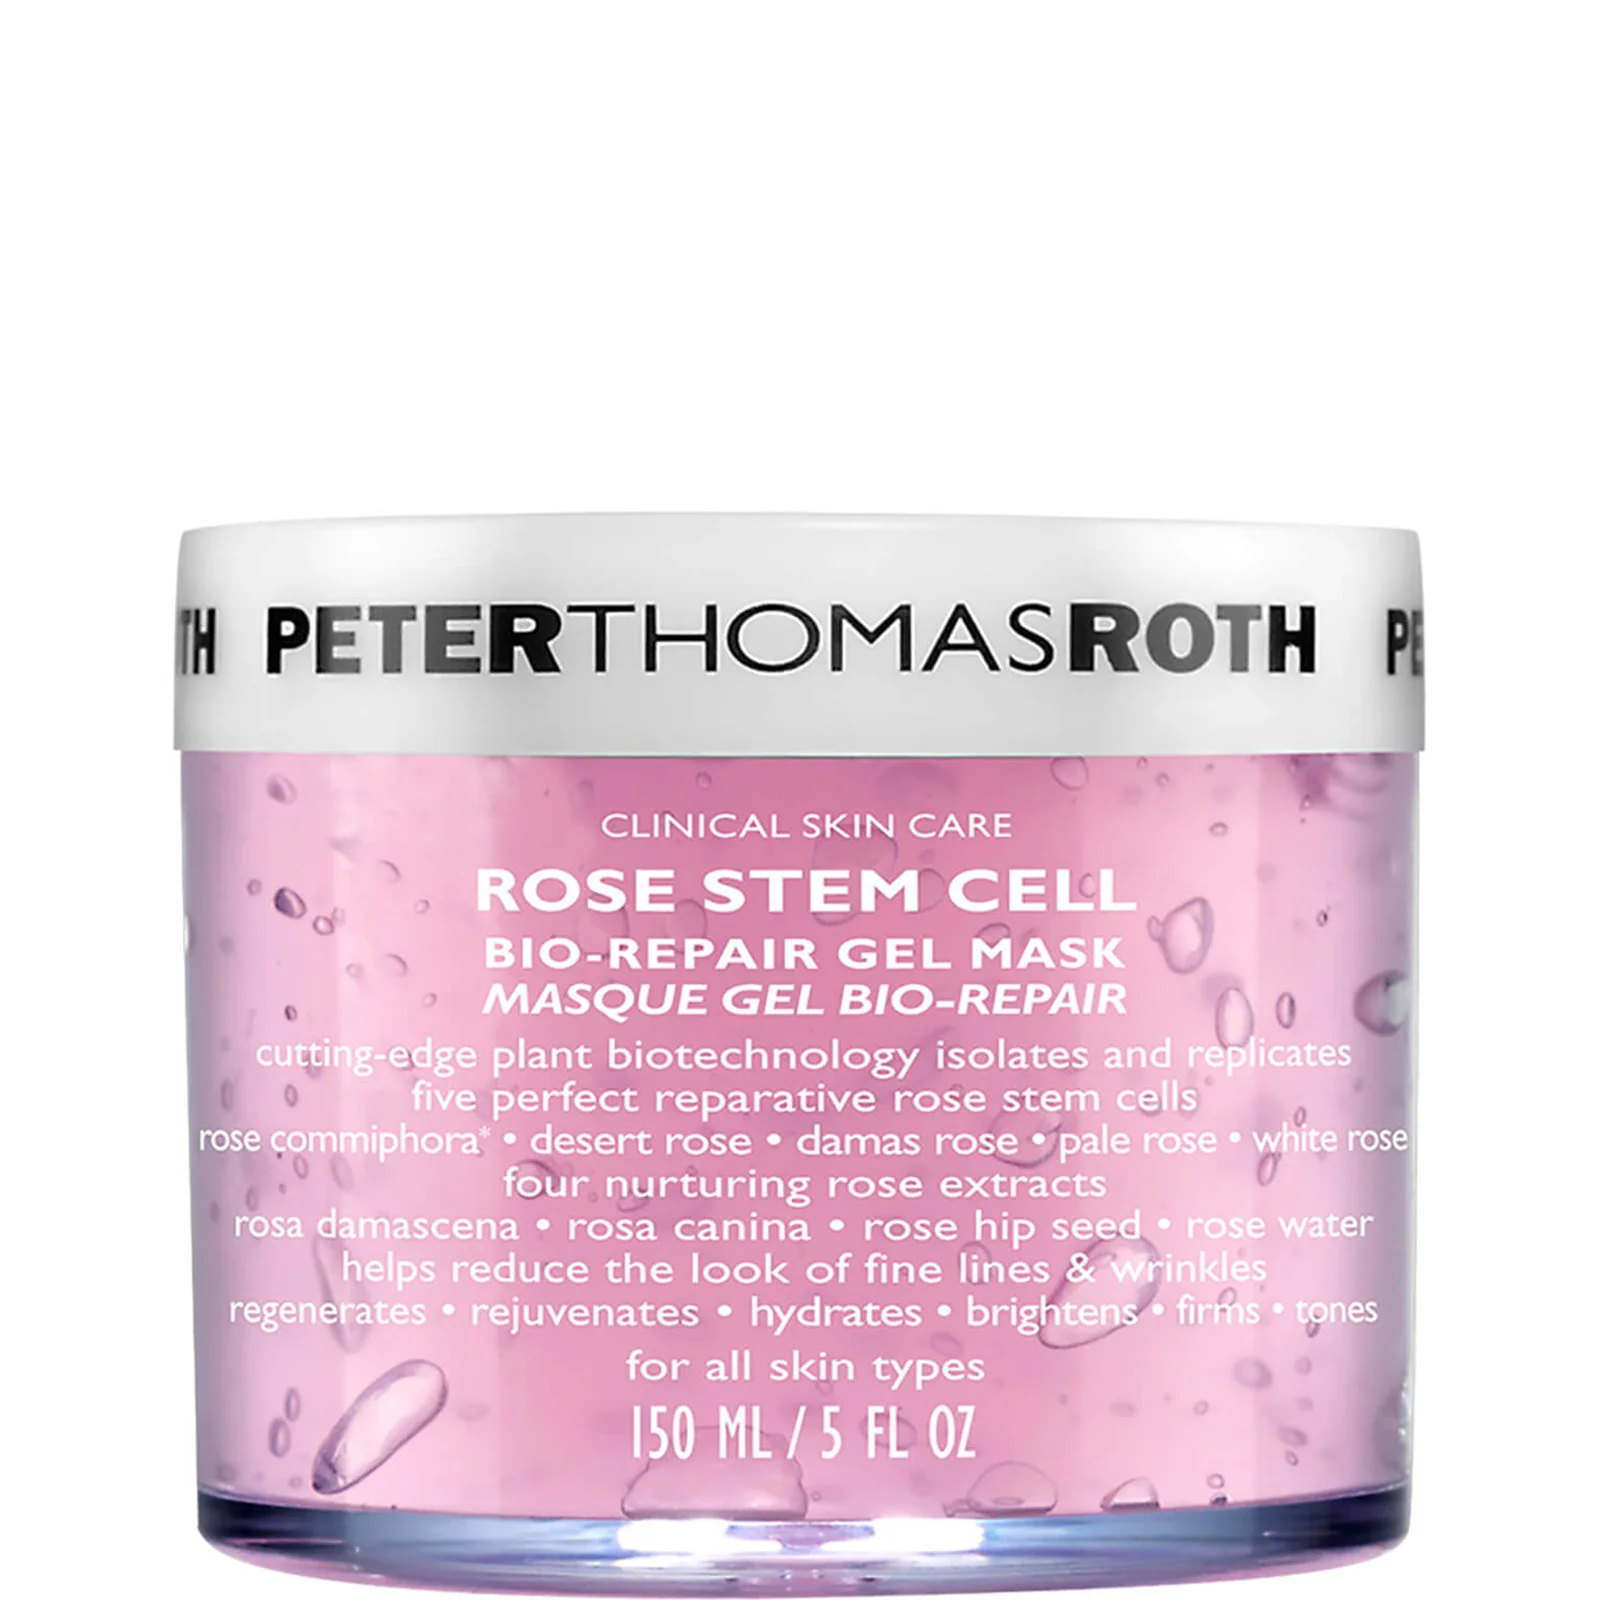 Peter Thomas Roth Rose Stem Cell: Bio-Repair Gel Mask 150ml Image 1